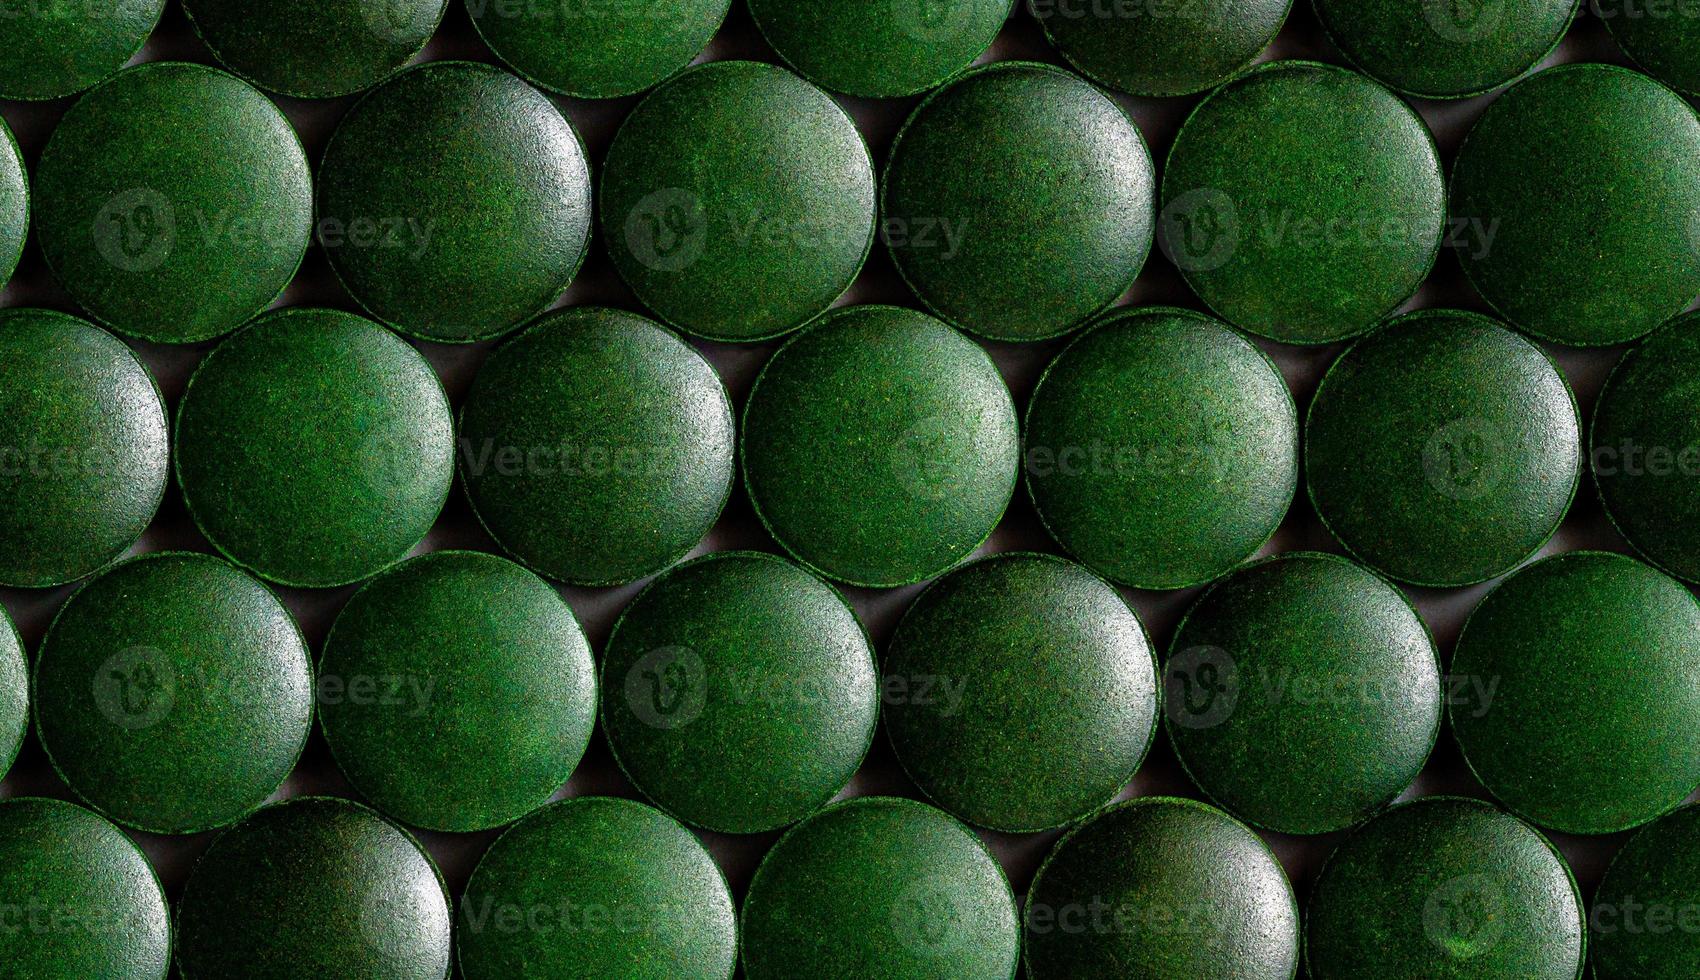 un patrón hexagonal sin costuras de muchas tabletas de espirulina orgánica verde colocadas apretadas en una capa sobre una superficie plana foto